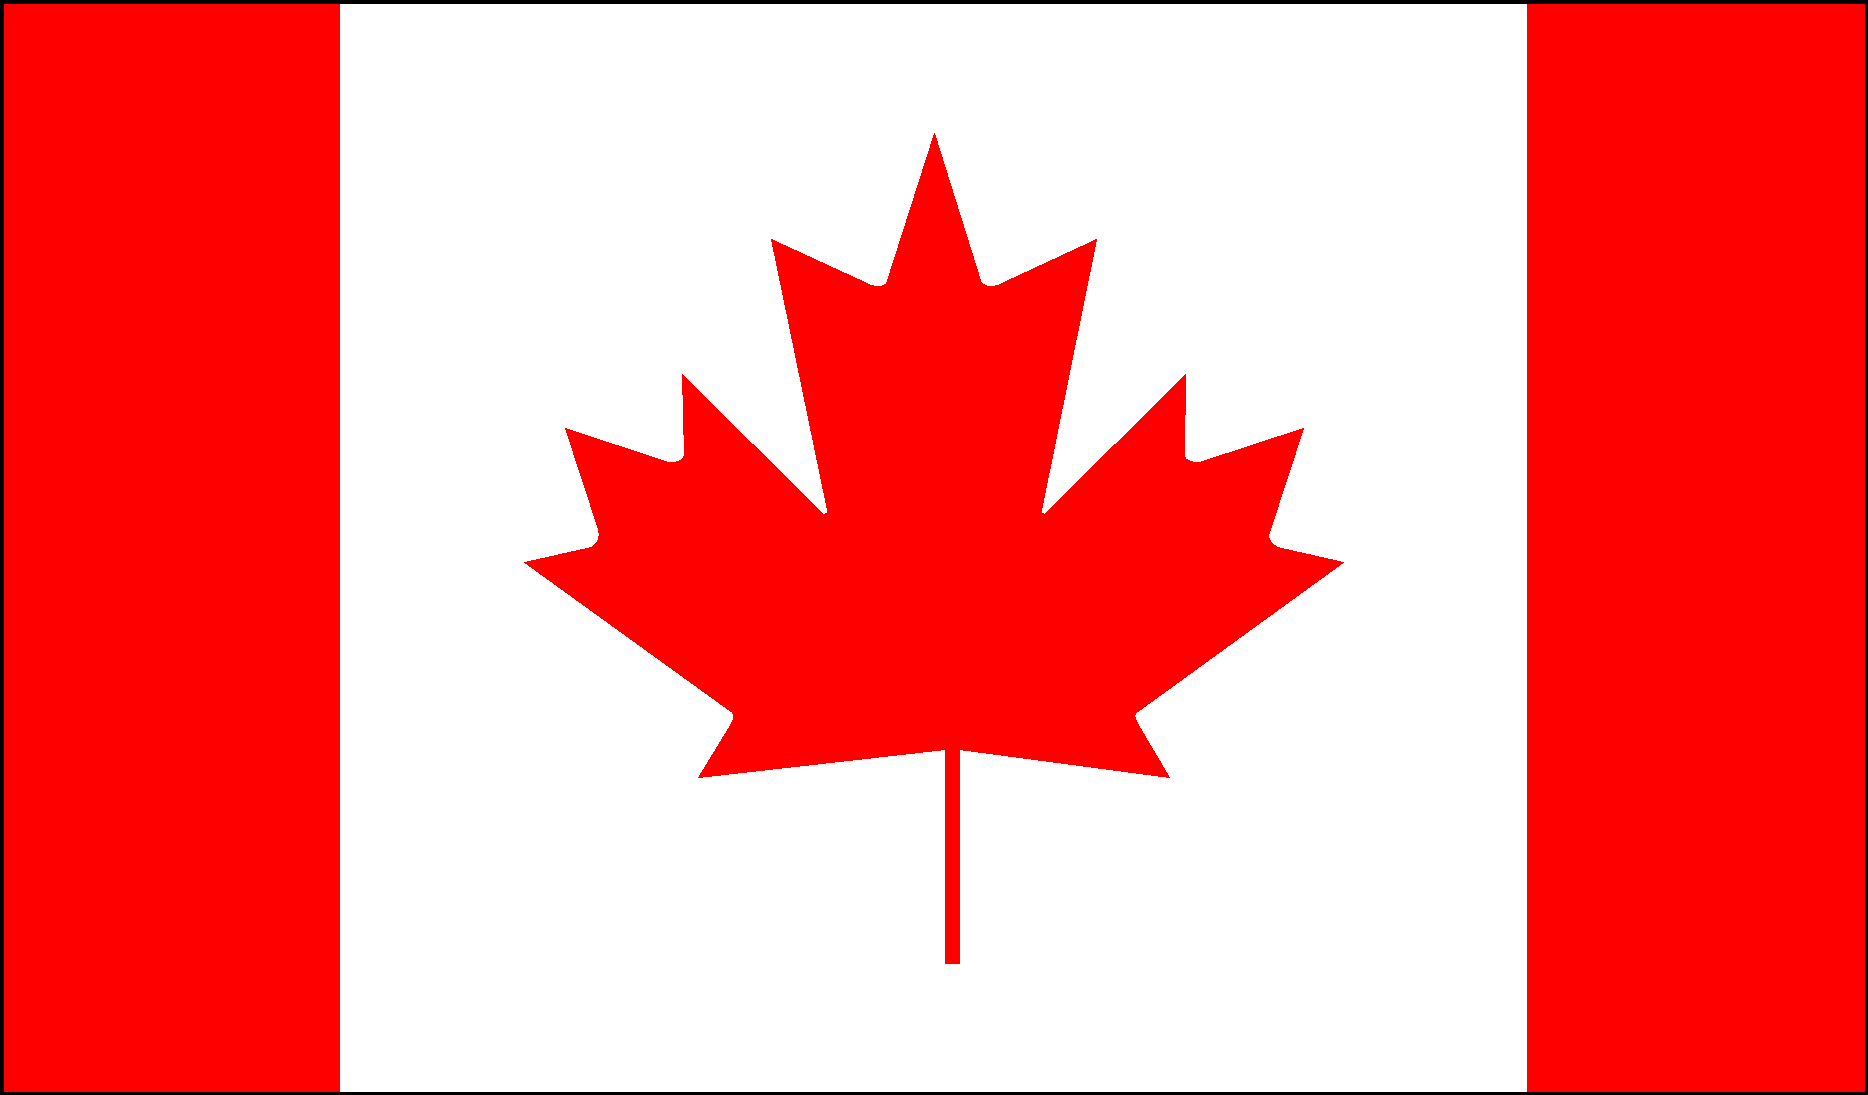 Part canada. Флаг Канада. Государственный флаг Канады. Кленовый лист на флаге Канады. Канада флаг и герб.